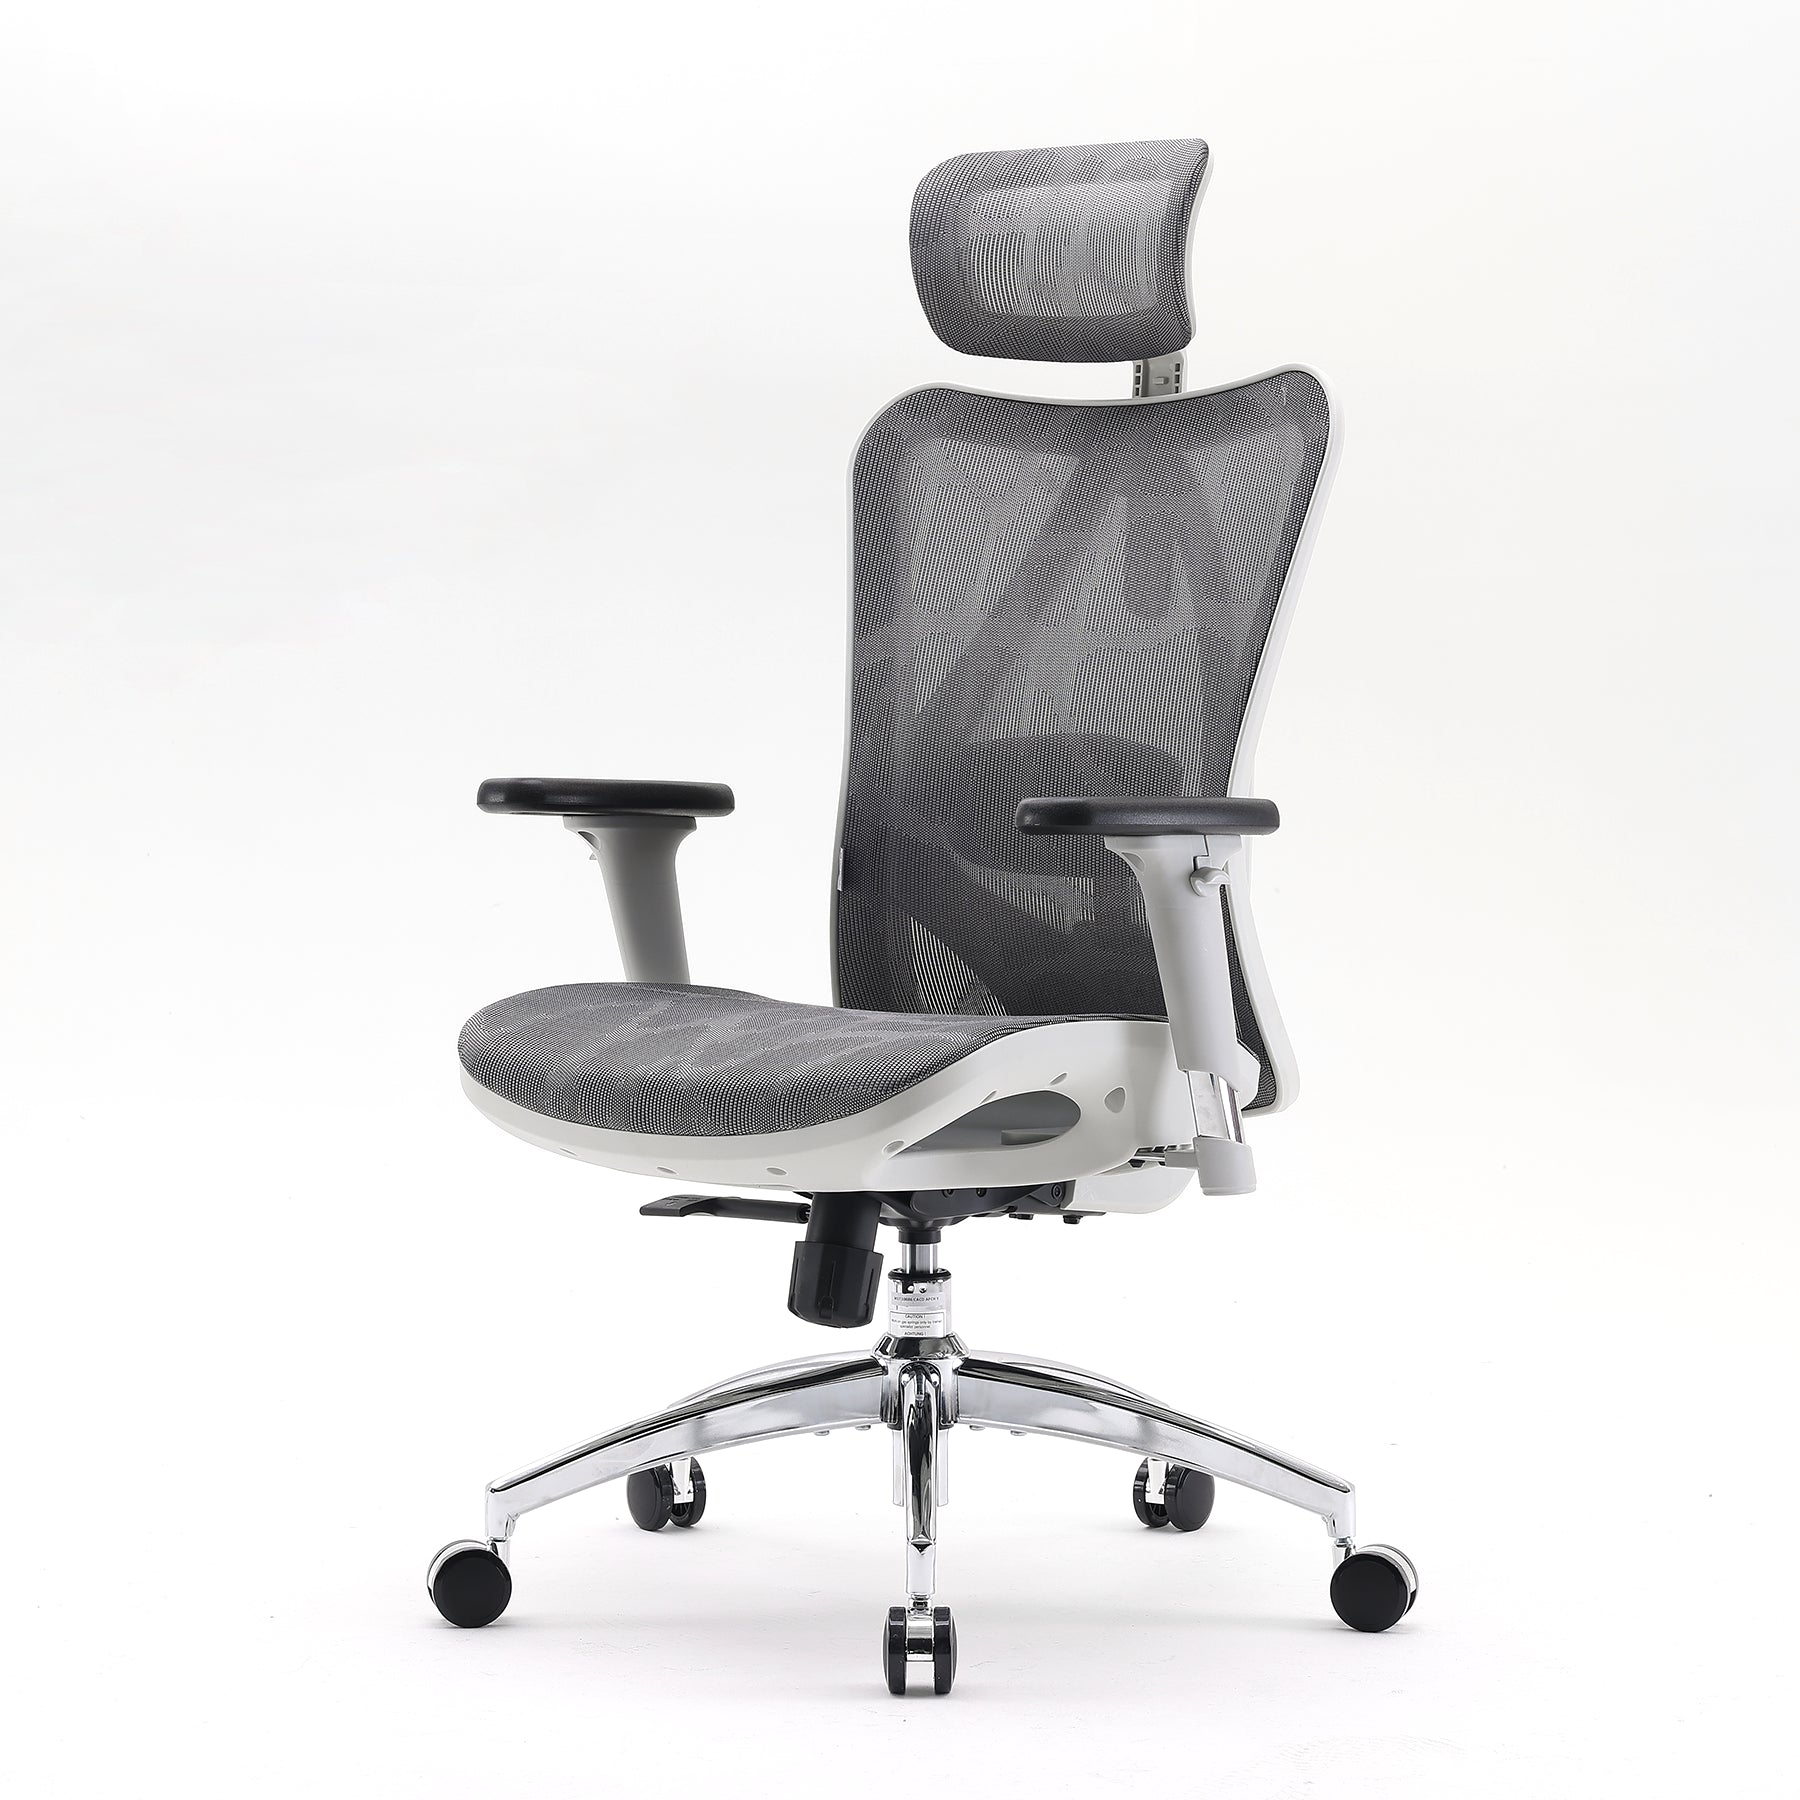 Chaise SIHOO M57 - Tests & avis - La meilleure chaise de bureau